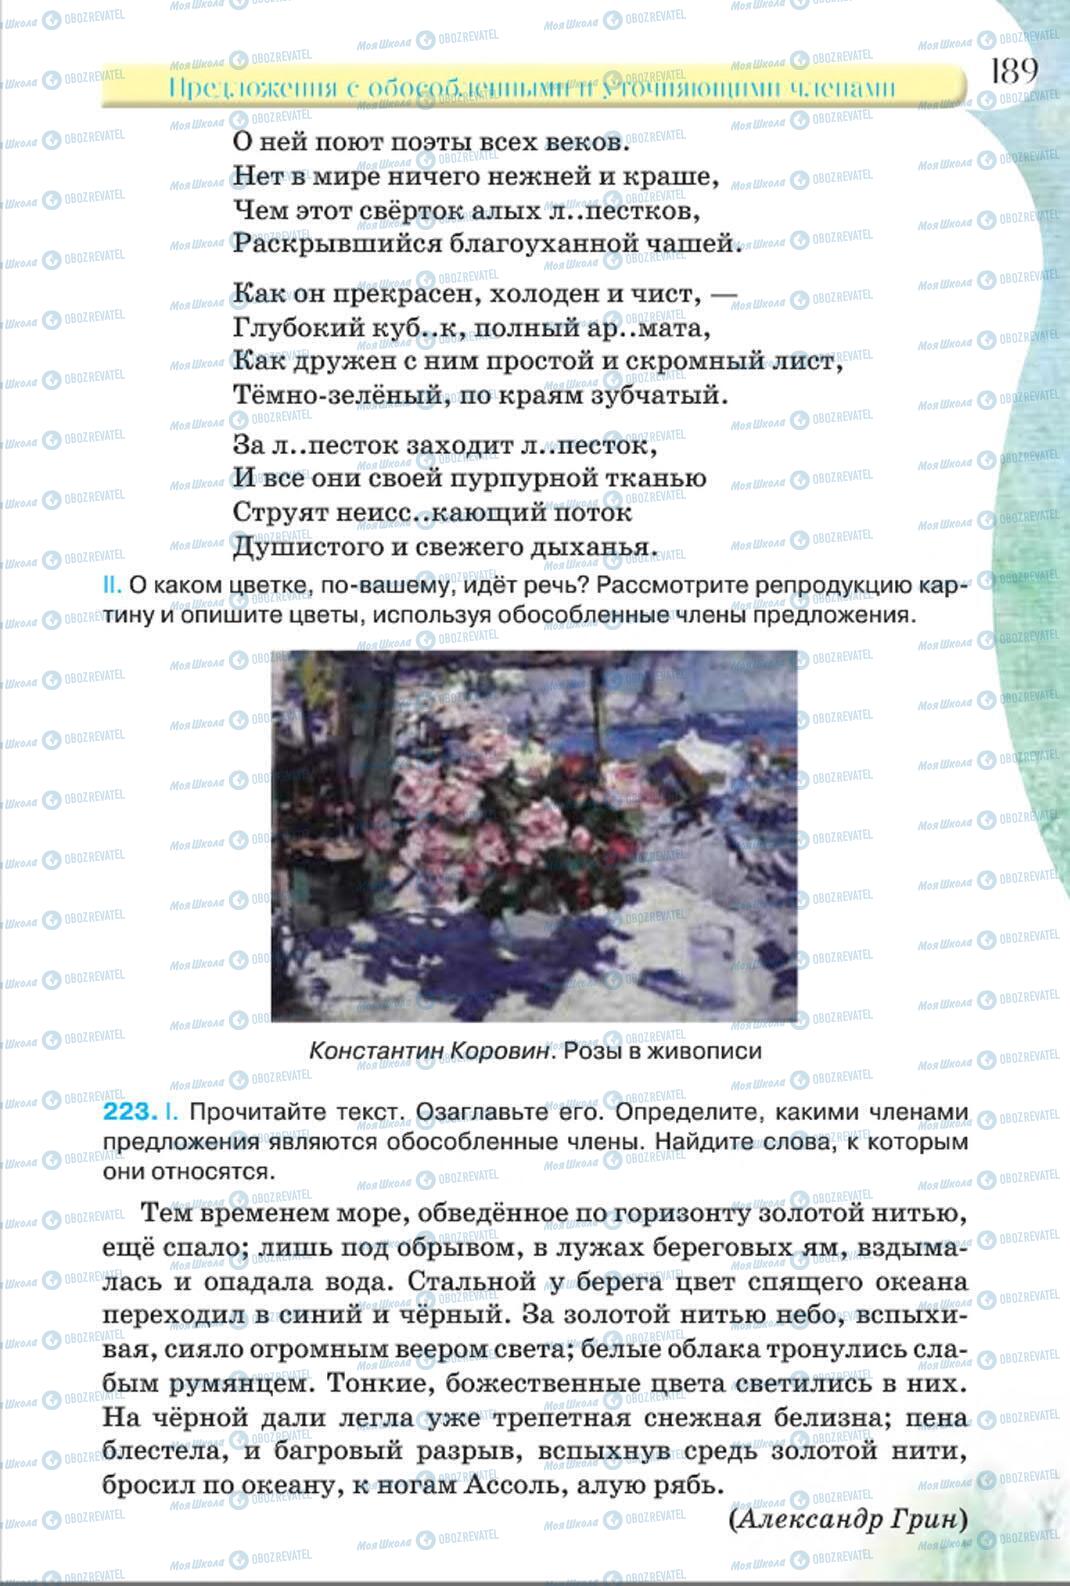 Учебники Русский язык 8 класс страница 189